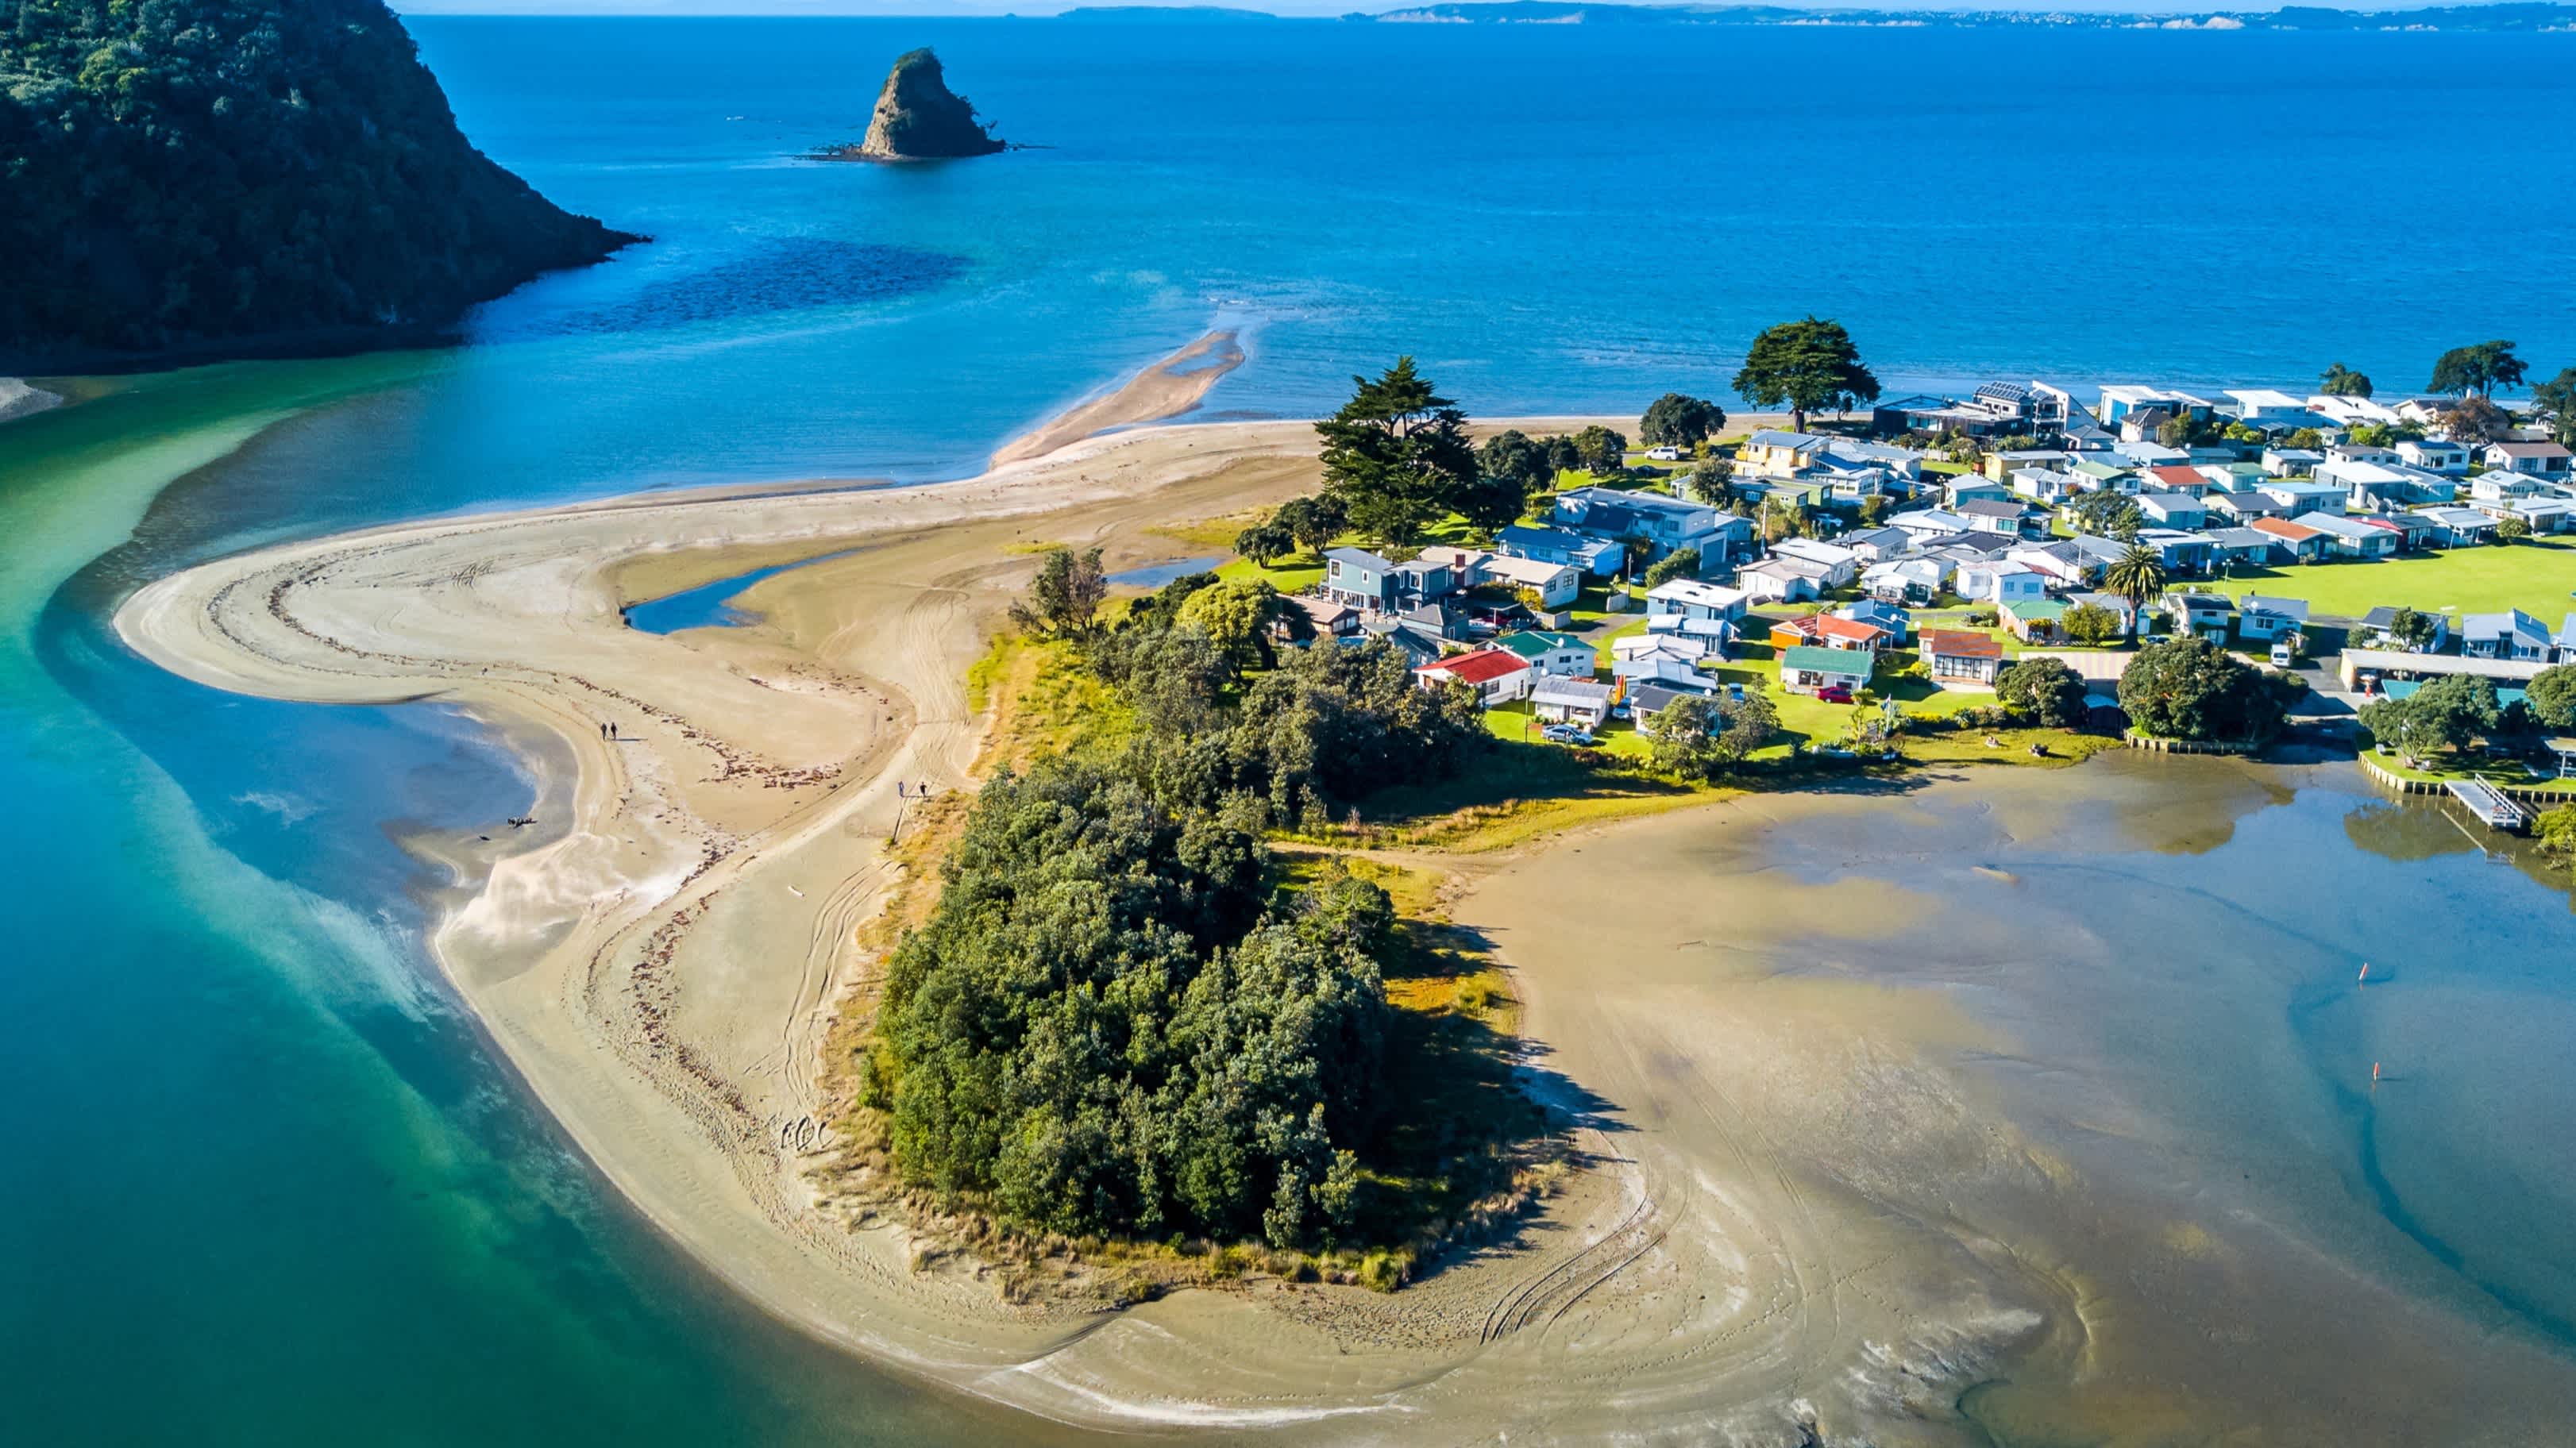 Vue aérienne sur le littoral de la ville d'Auckland que vous pourrez découvrir pendant votre voyage en Nouvelle-Zélande.